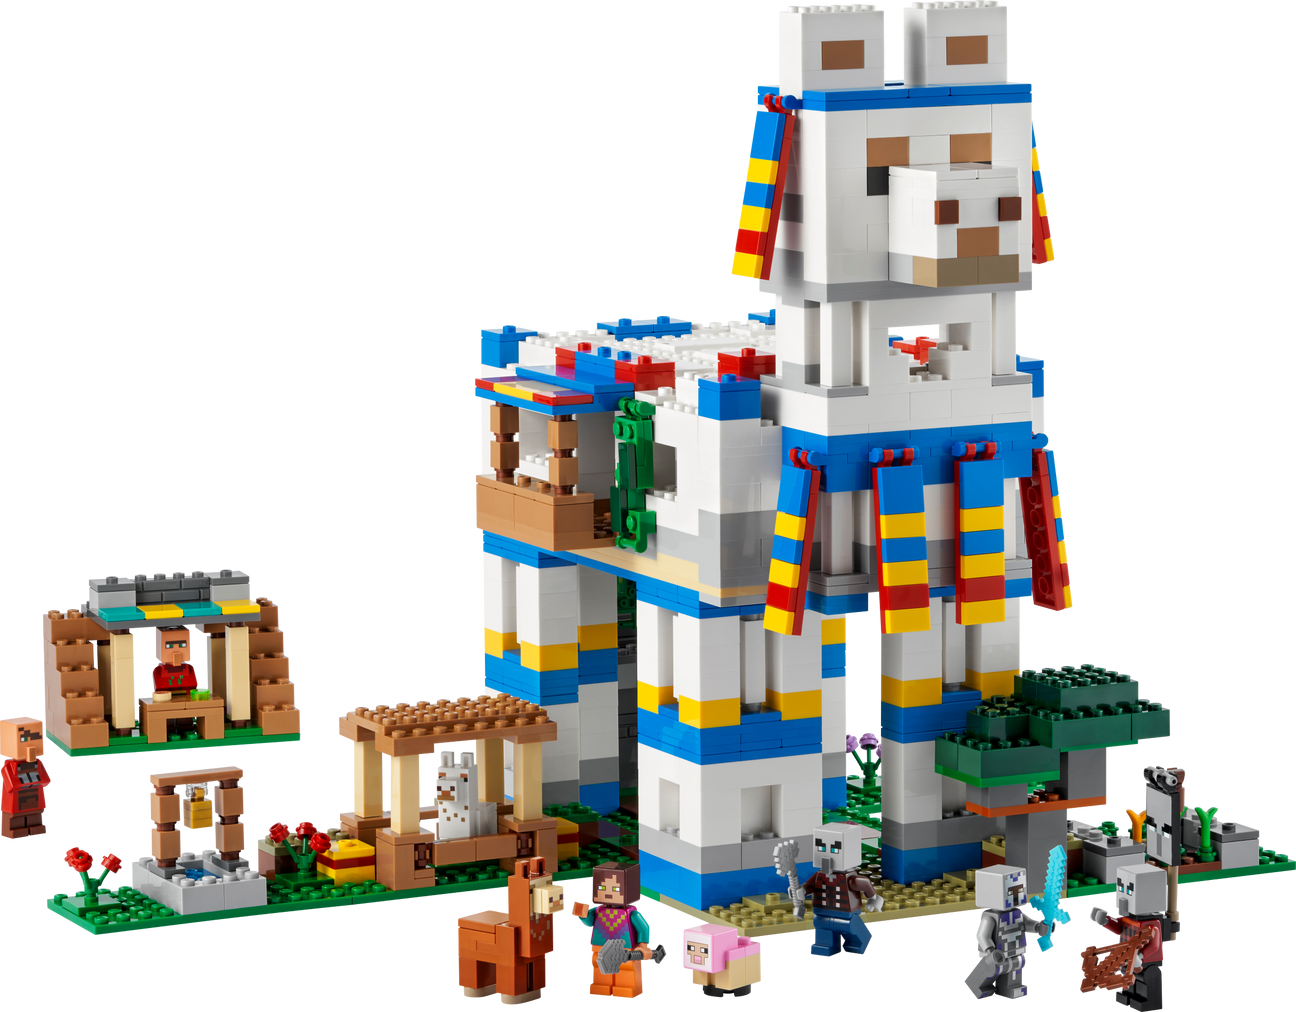 21188 The Llama Village (Retired) LEGO Minecraft